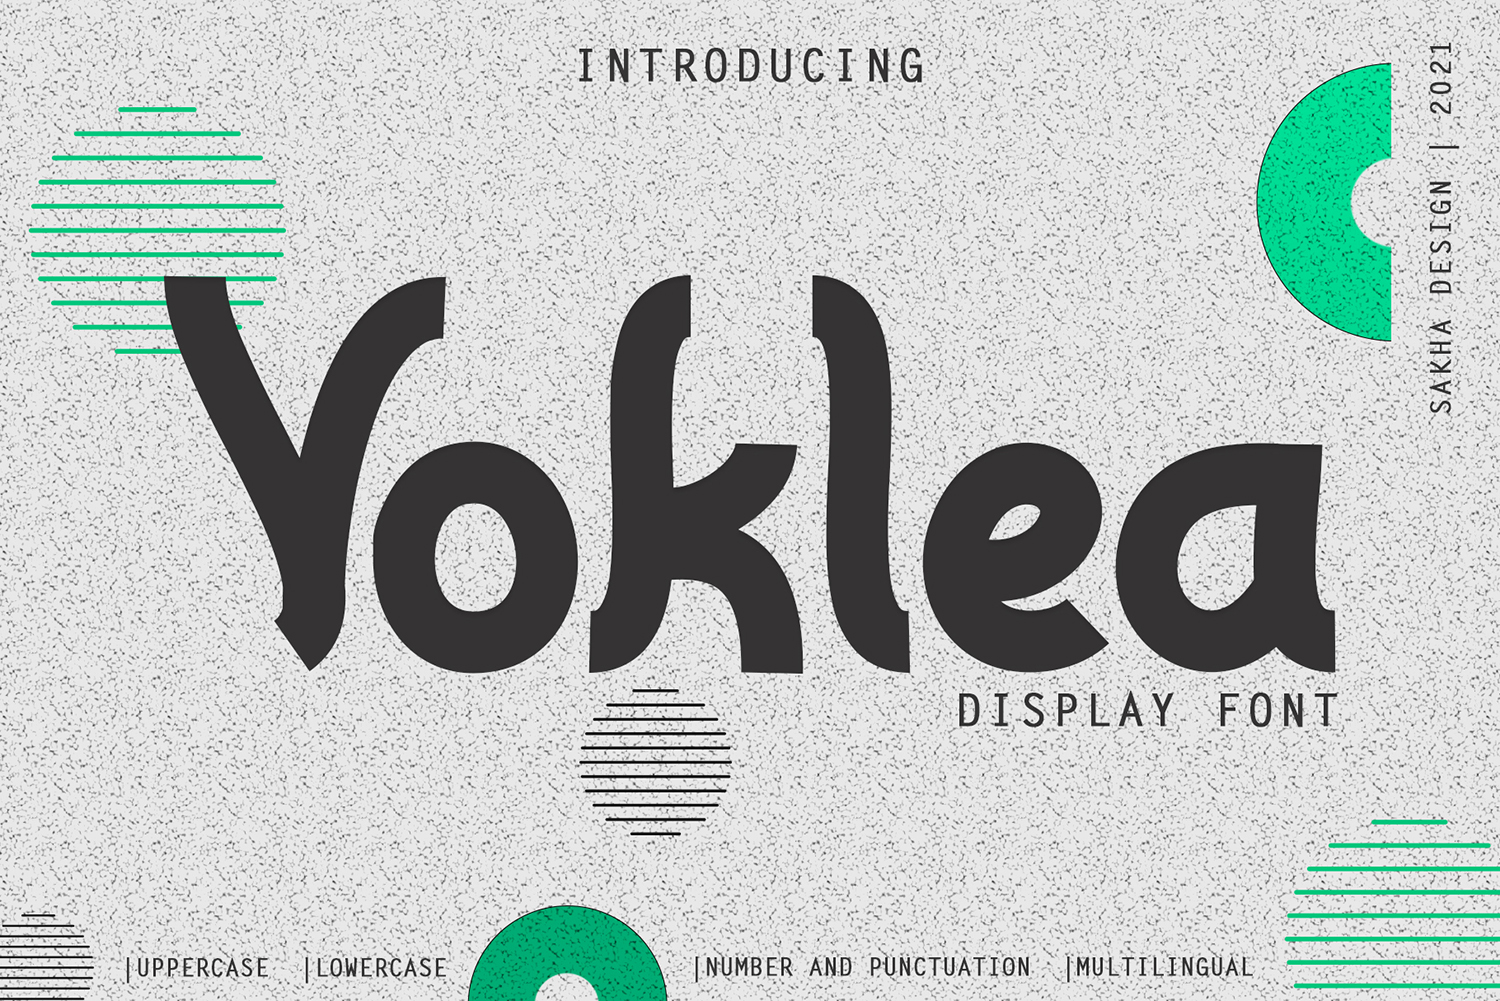 Voklea Free Font